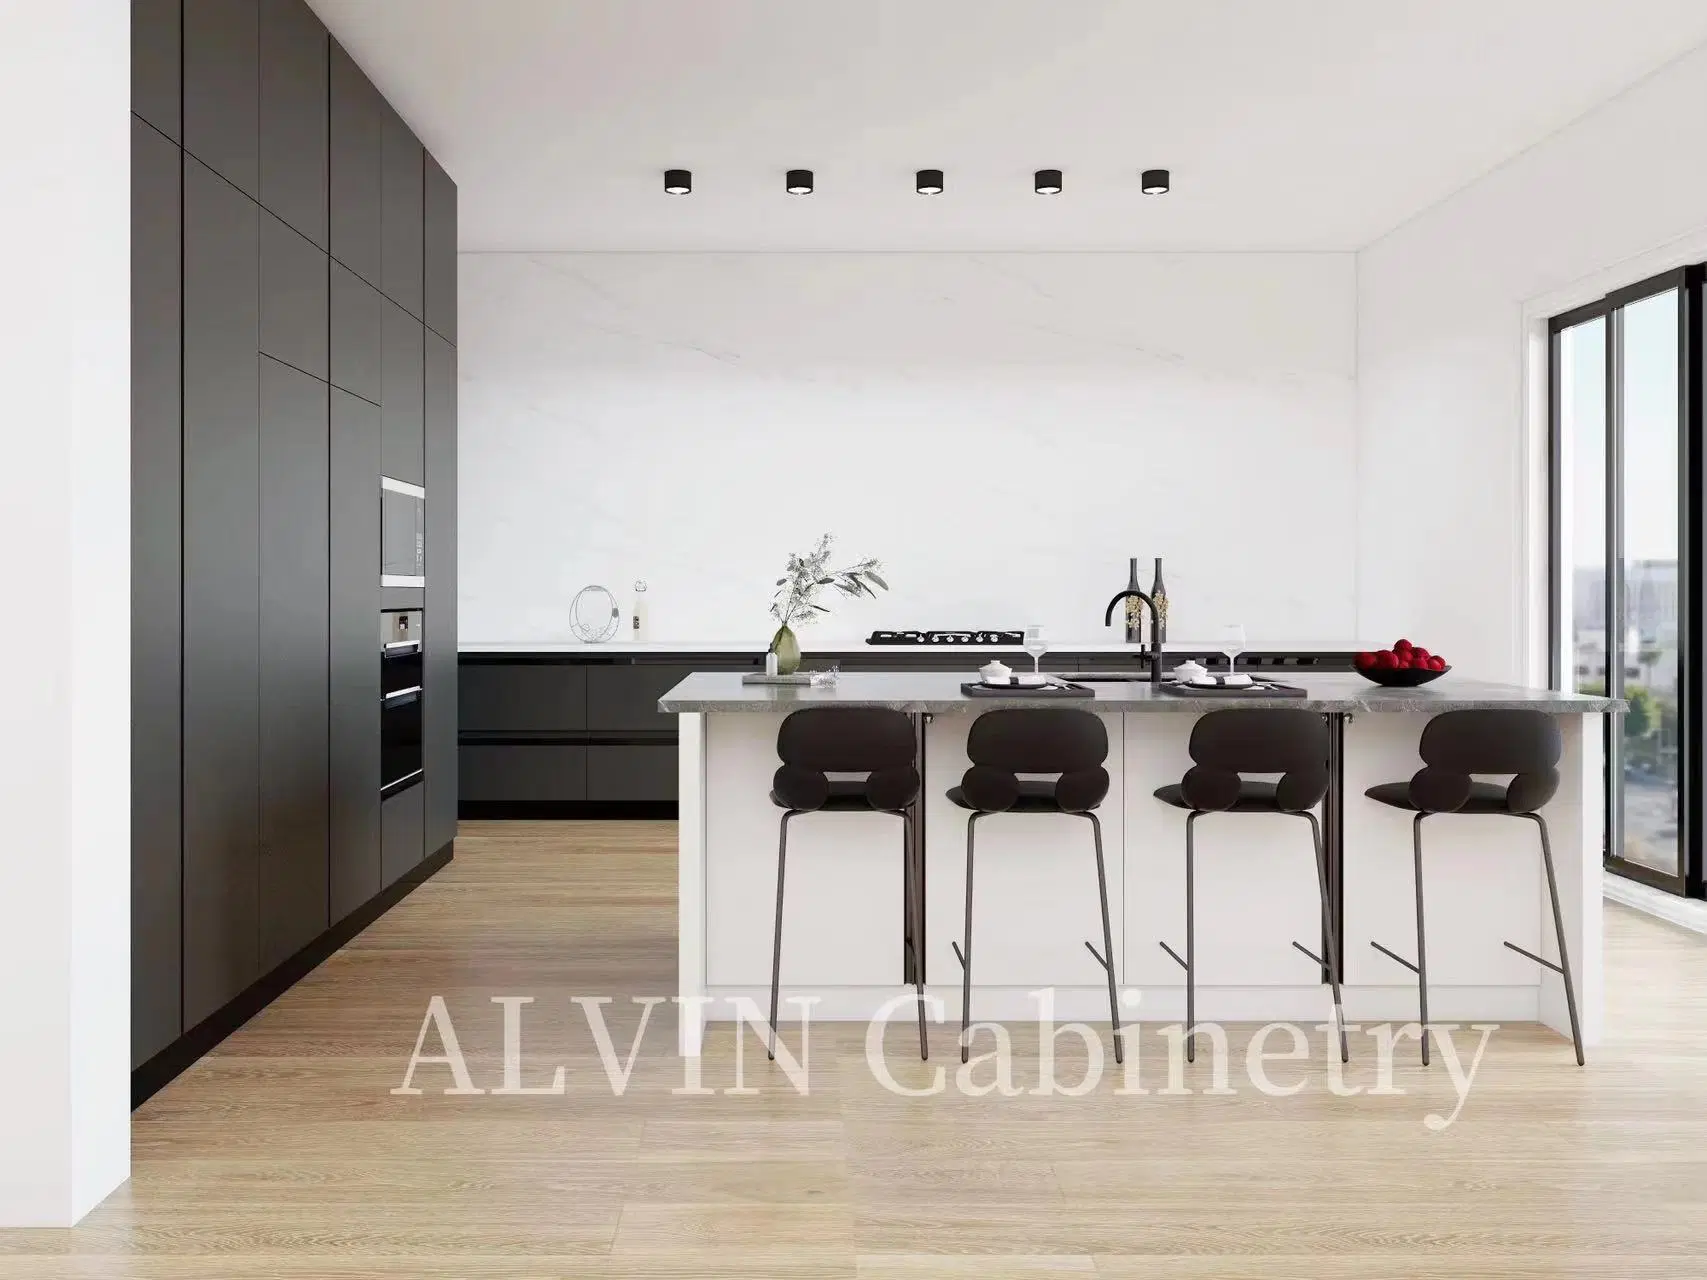 Acabamento da cozinha com acabamento em verniz cinzento escuro na versão E0 Mobiliário doméstico em contraplacado